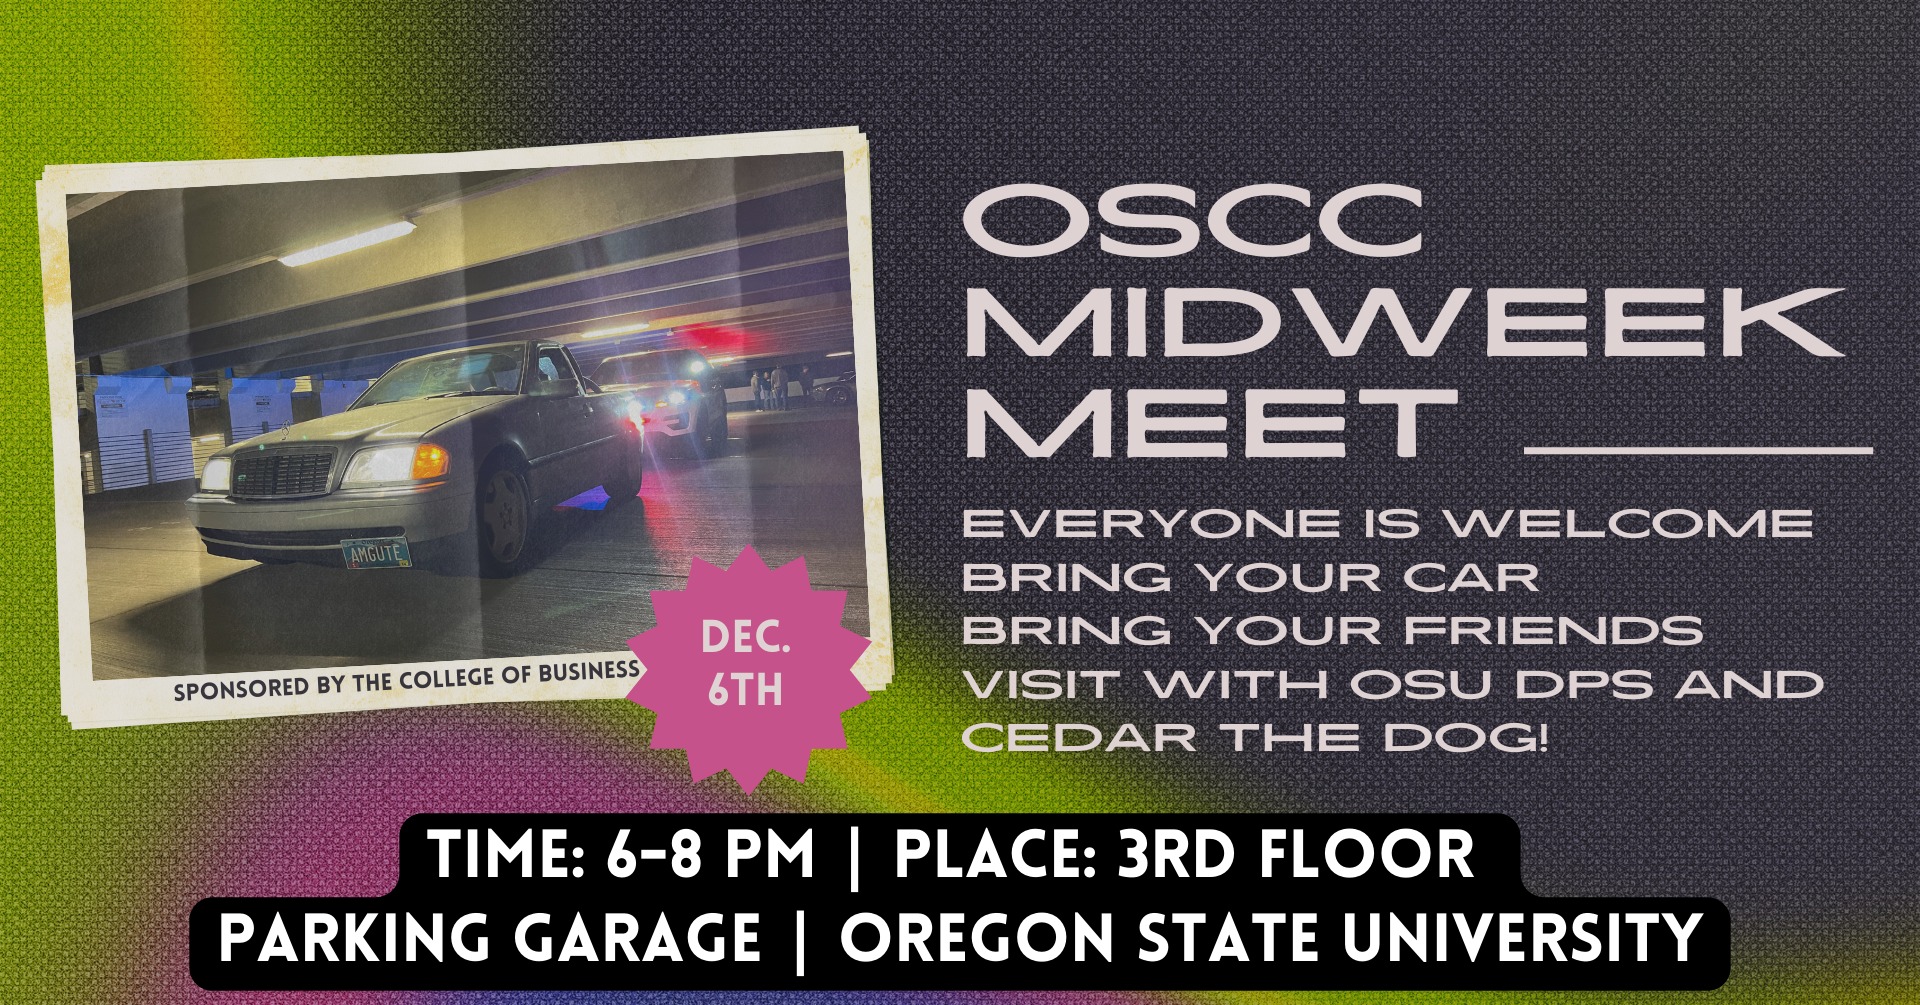 OSCC Midweek Meet